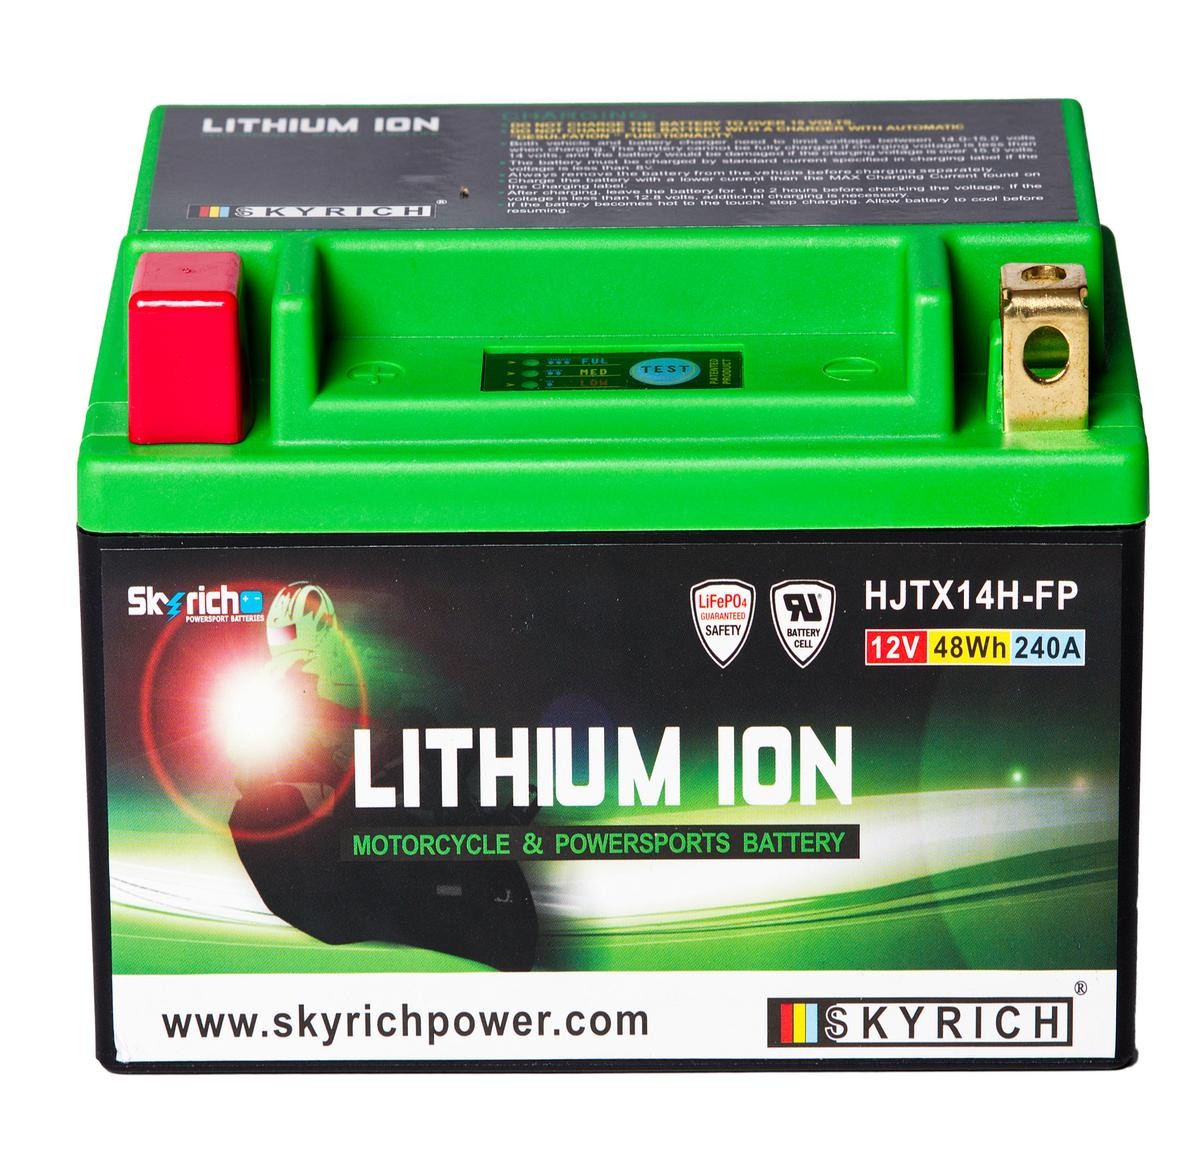 ADIVA AD Batterie 12V 4Ah 240A N Li-Ionen-Batterie SKYRICH LITHIUM ION HJTX14H-FP